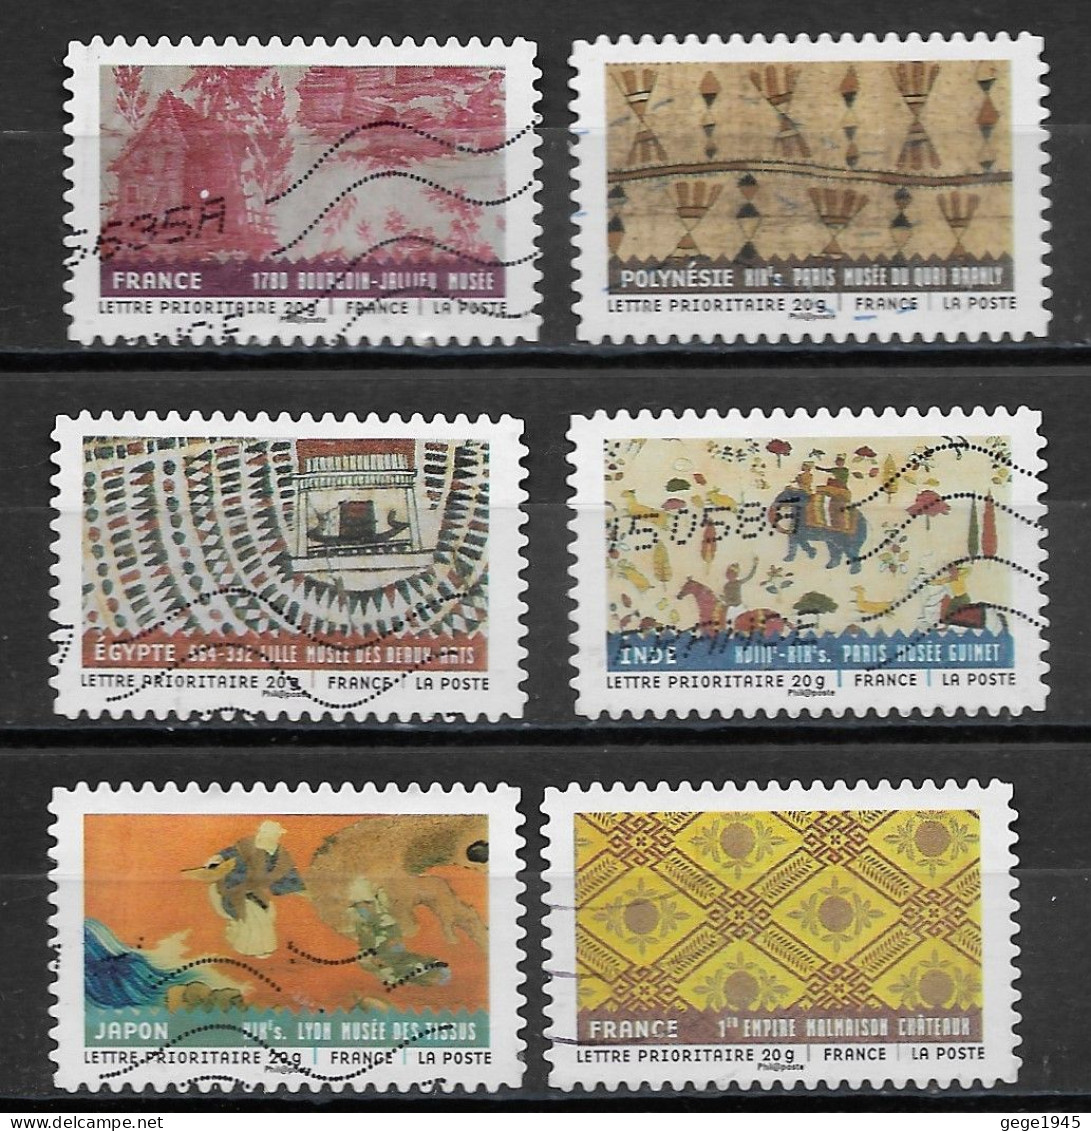 France  2011  Obitéré  Autoadhésif  N° 512 - 514 - 517 - 518 - 520 - 523    "  Tissus Du Monde  " - Used Stamps